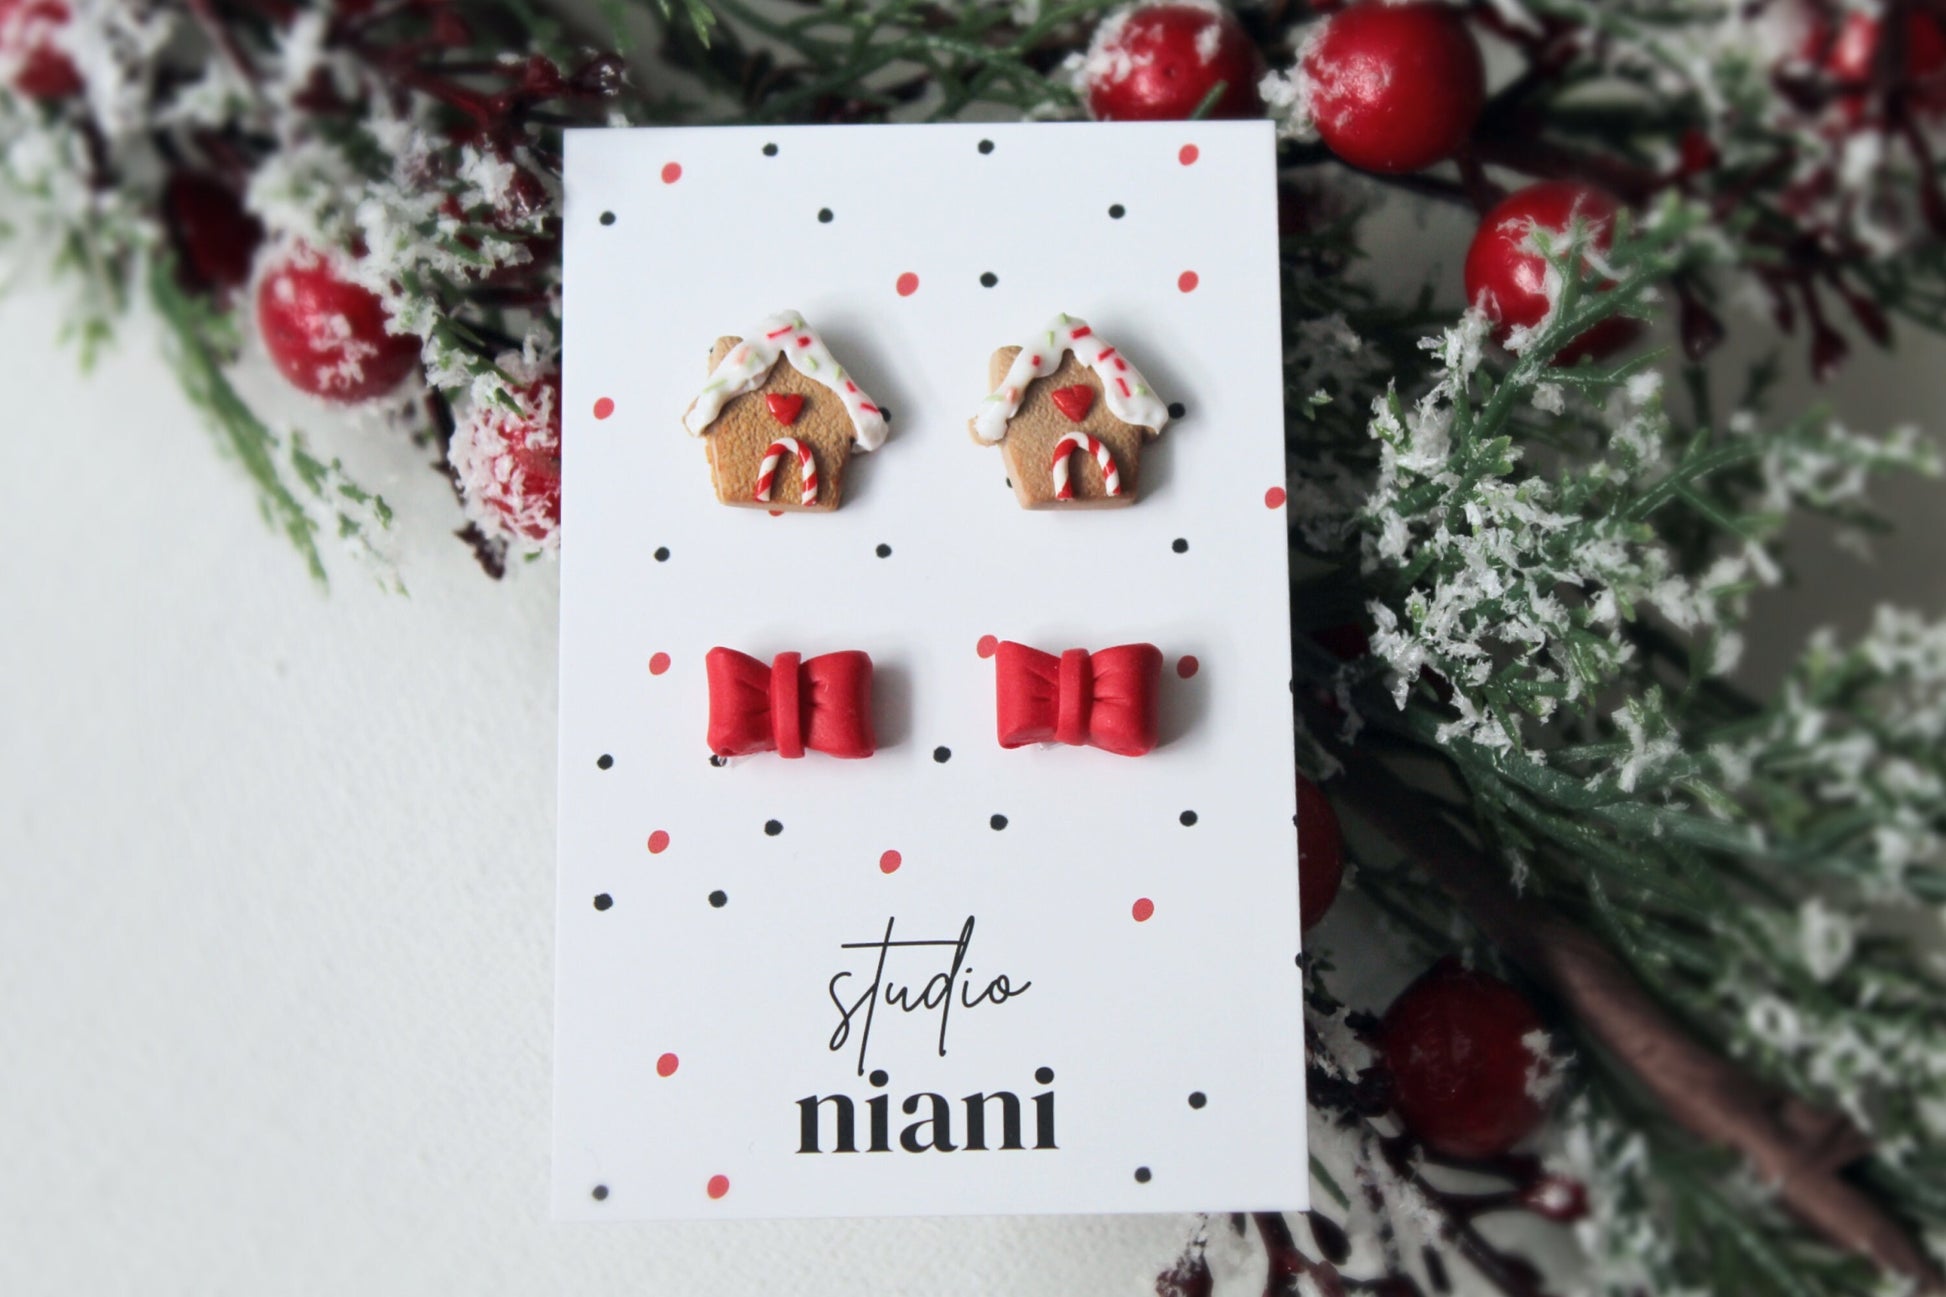 Stud Earrings, Christmas Earrings, Gingerbread House Earrings, Bow Stud Earrings, Polymer Clay Earrings, Gingerbread Earrings Clay, Handmade